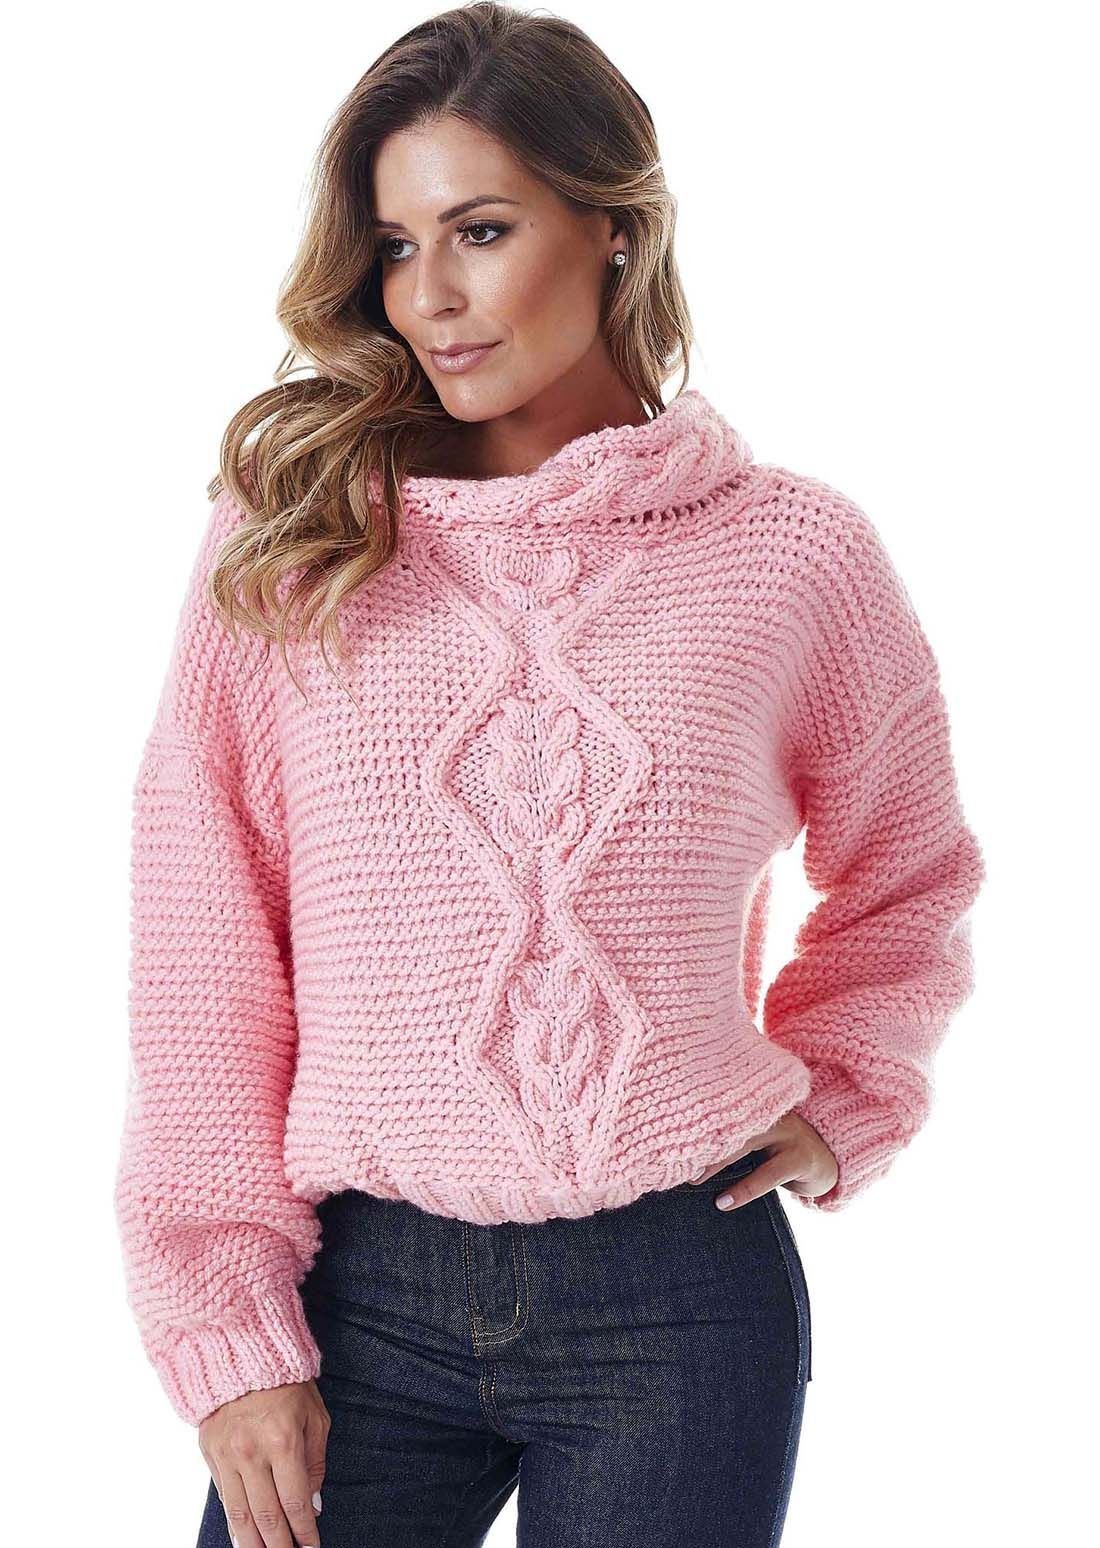 Женские свитера джемперы. Пуловер Basler пуловер. Вязаный свитер. Красивые свитера для женщин. Вязаные кофты женские.